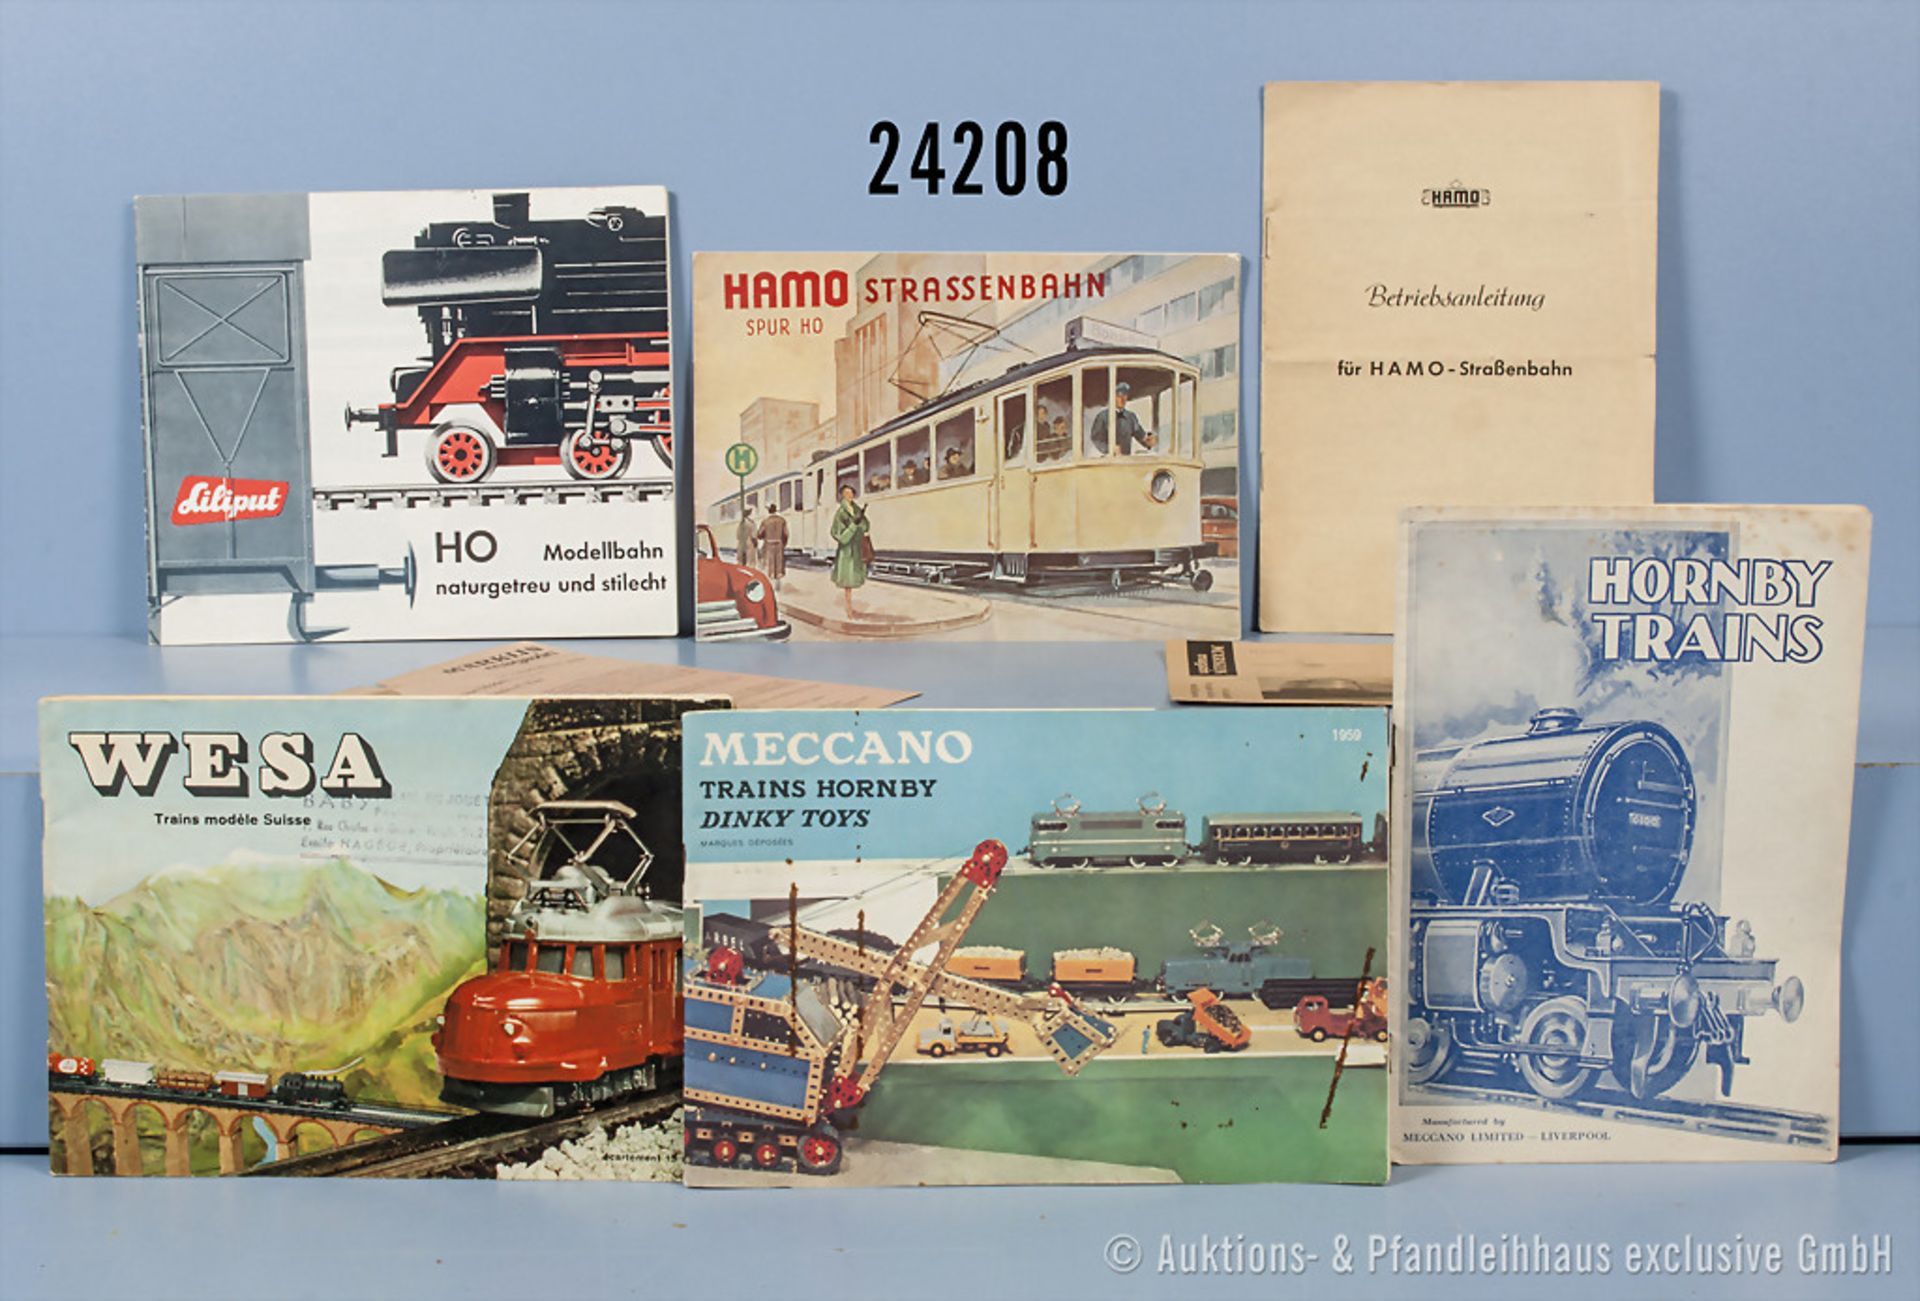 Konv. Modellbahn-Literatur, dabei 2 Hamo Straßenbahn Betriebsanleitungen, 1 Liliput Katalog, 1